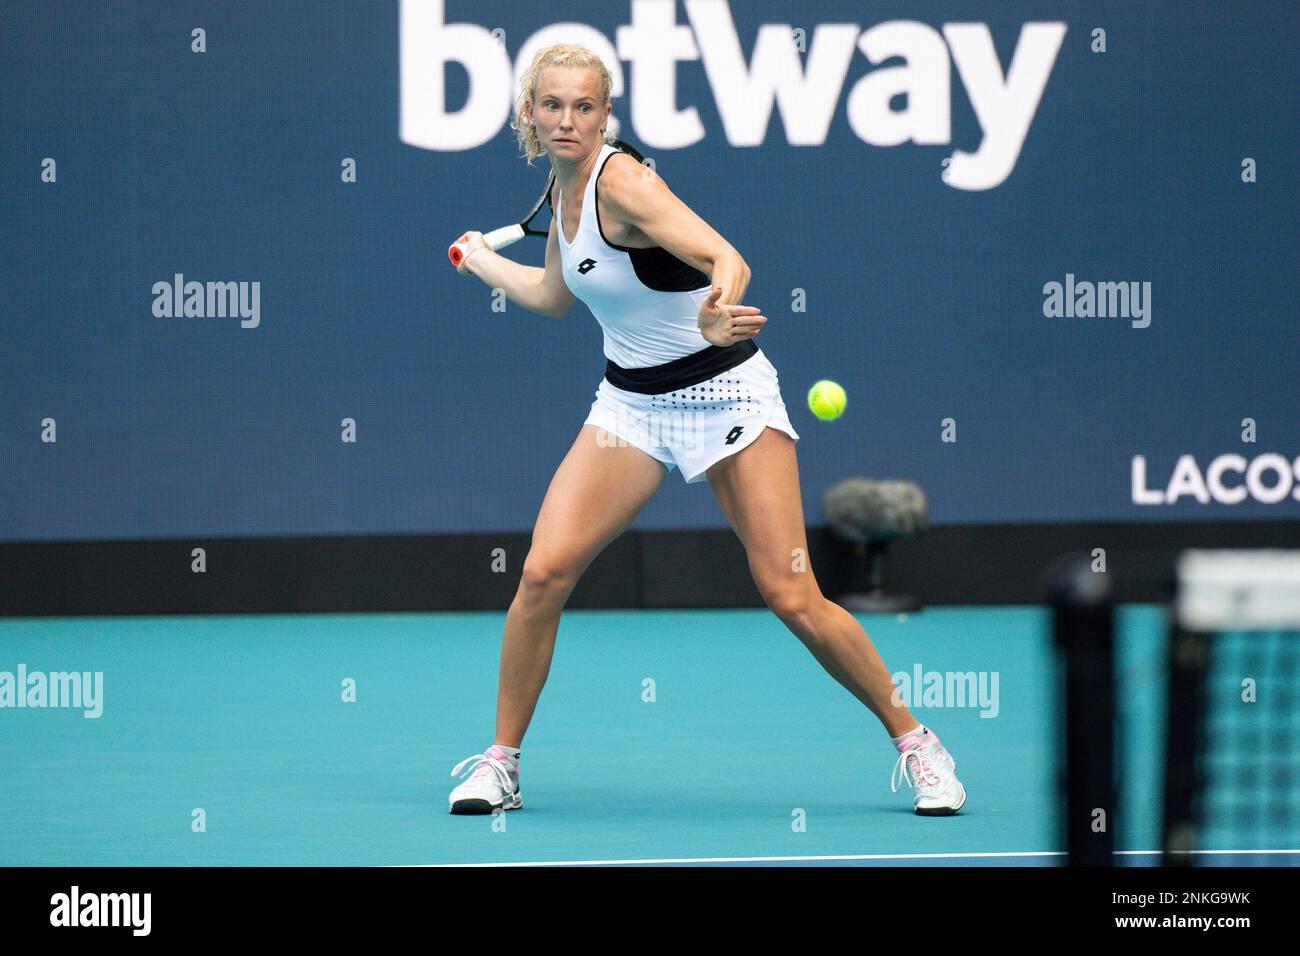 Katerina Siniakova of the Czech Republic during the Miami Open Tennis tournament on Thursday, March 24, 2022 in Miami Gardens, Fla